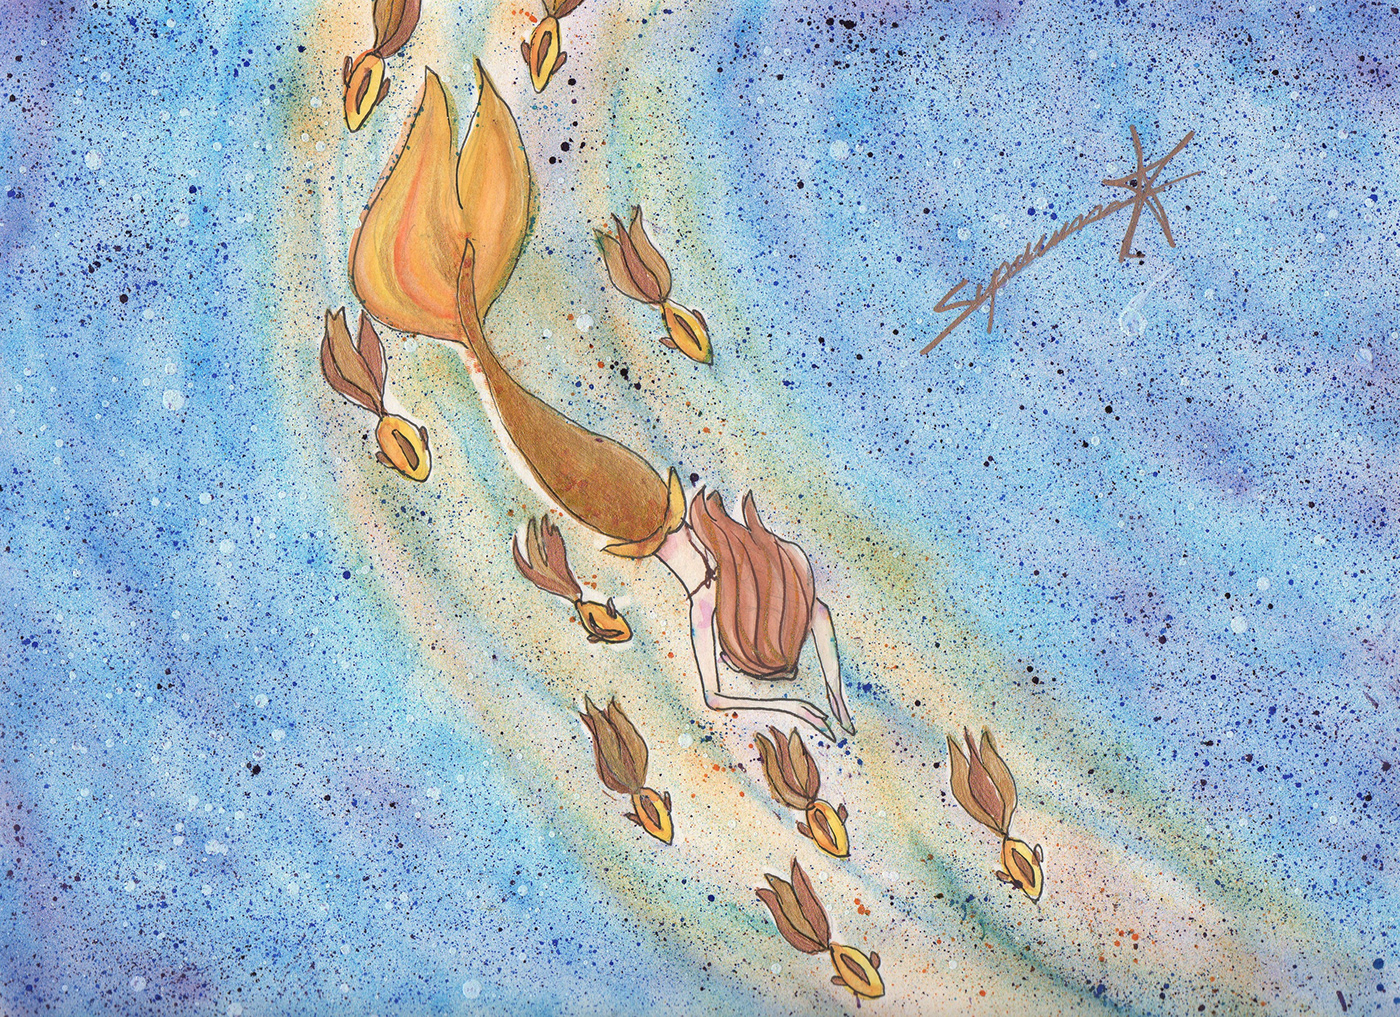 calendario ilustracion dibujo acuarela vera editorial peces mar oceano acuatico